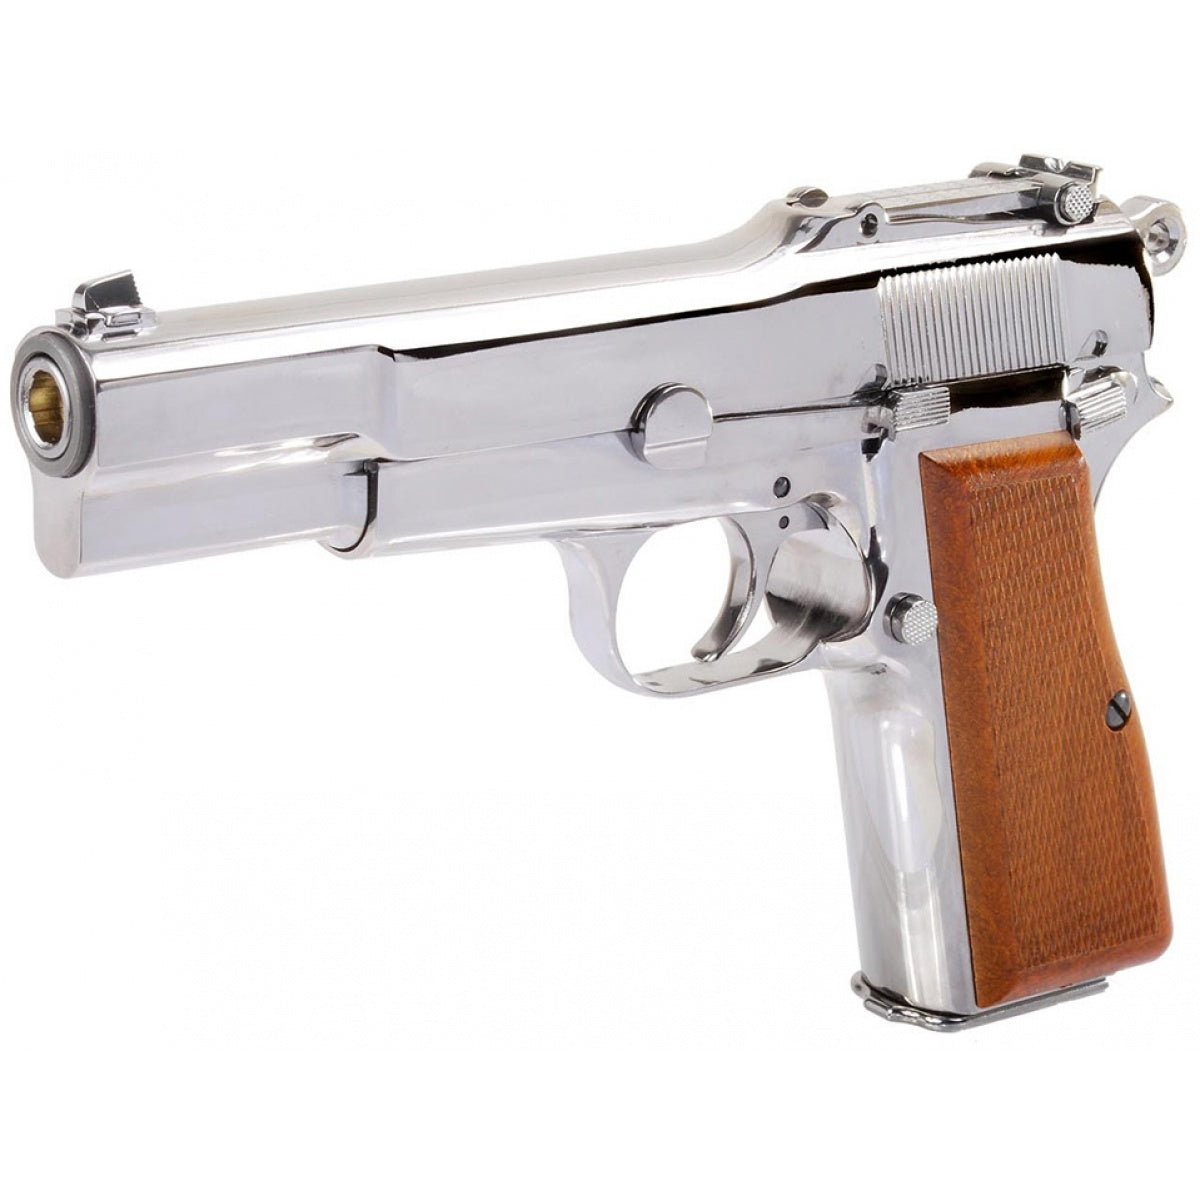 [WE-Tech] Full Metal Browning Hi-Power M1935 GBB Pistol[Chromed Plated][SV]